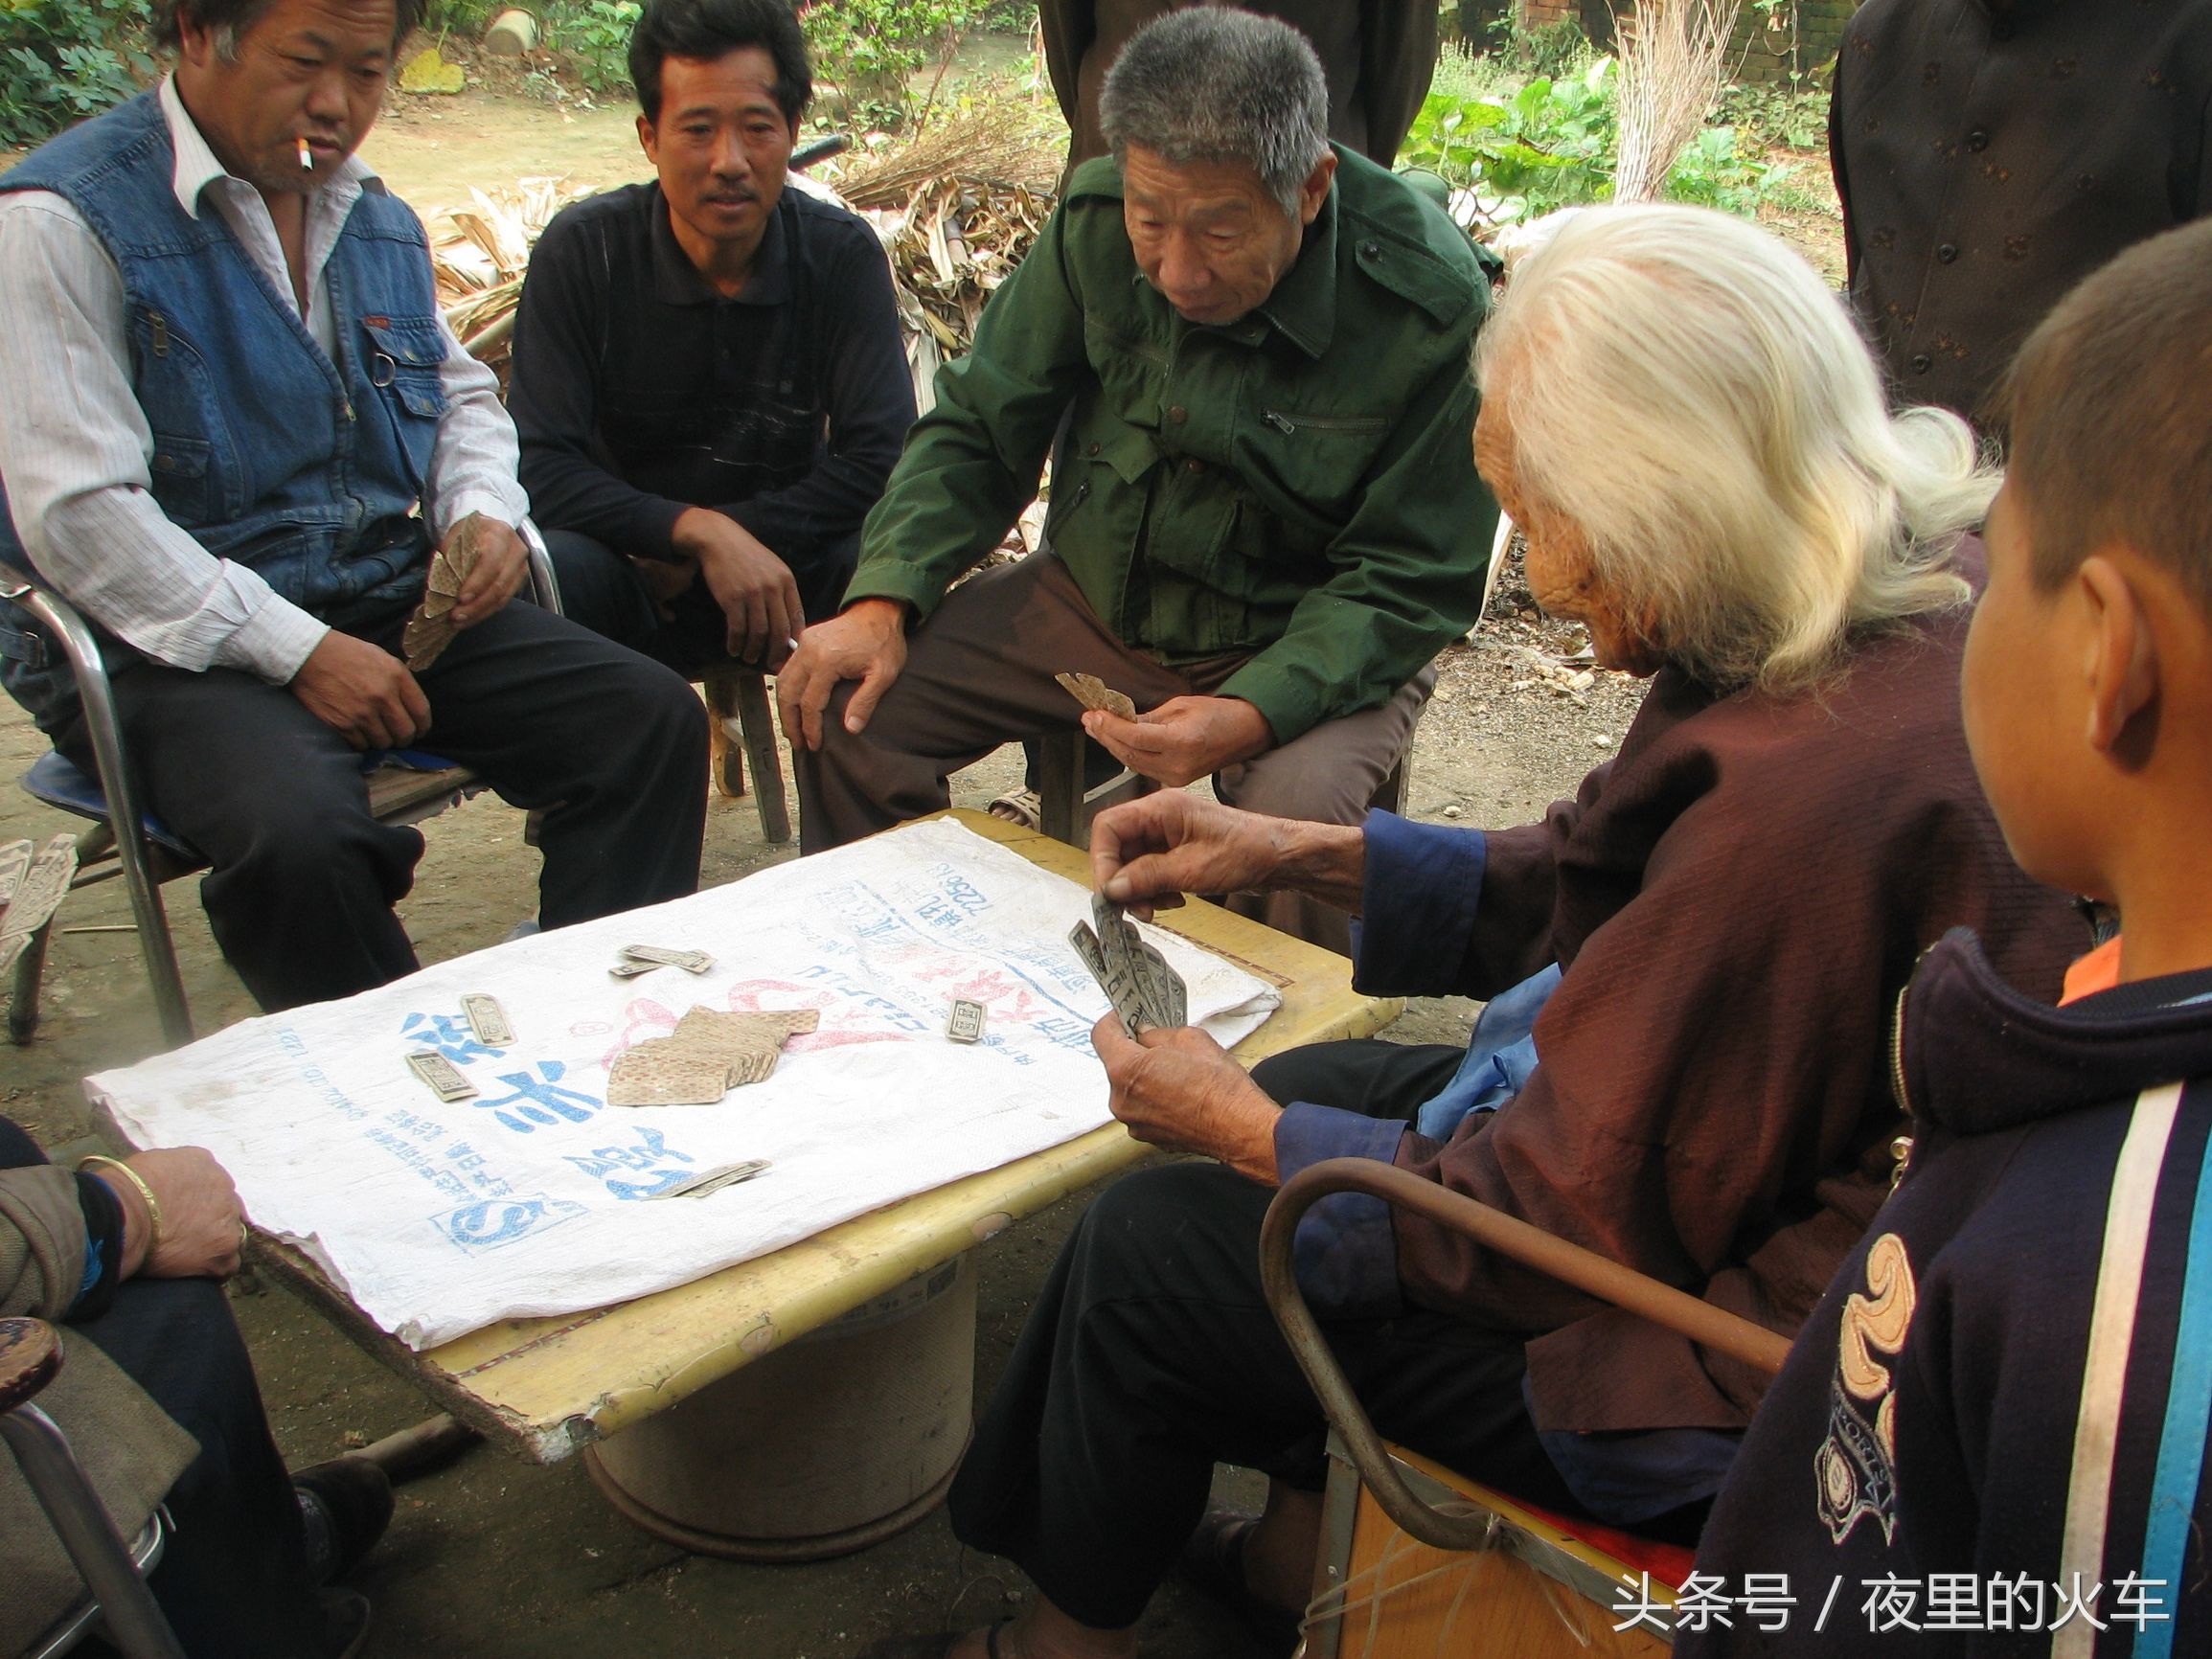 河南农村古稀老人爱玩这种牌,图案古怪如同火